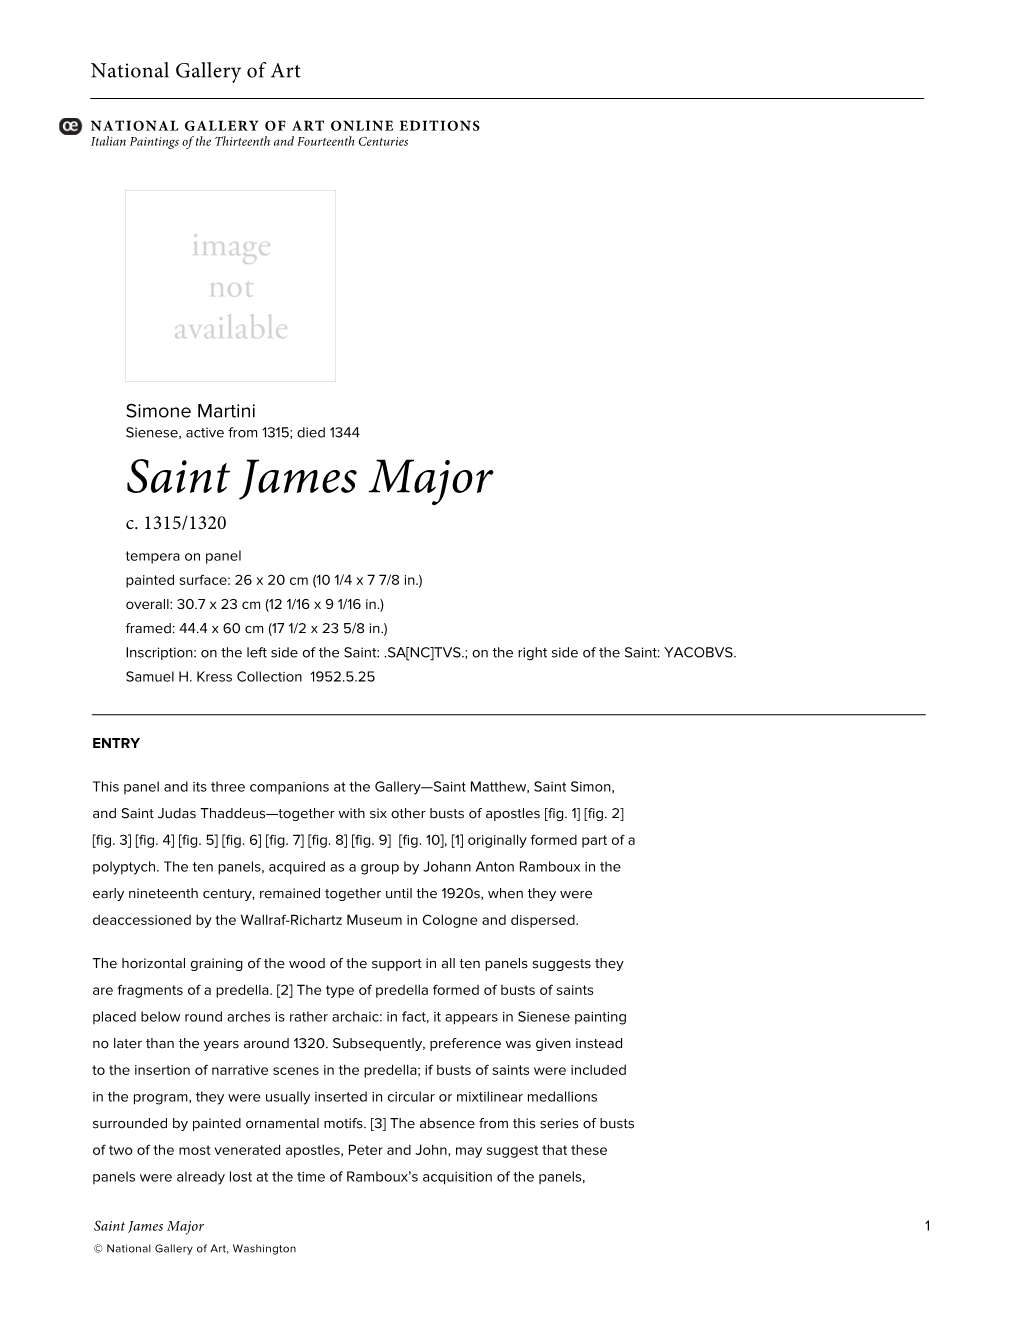 Saint James Major C